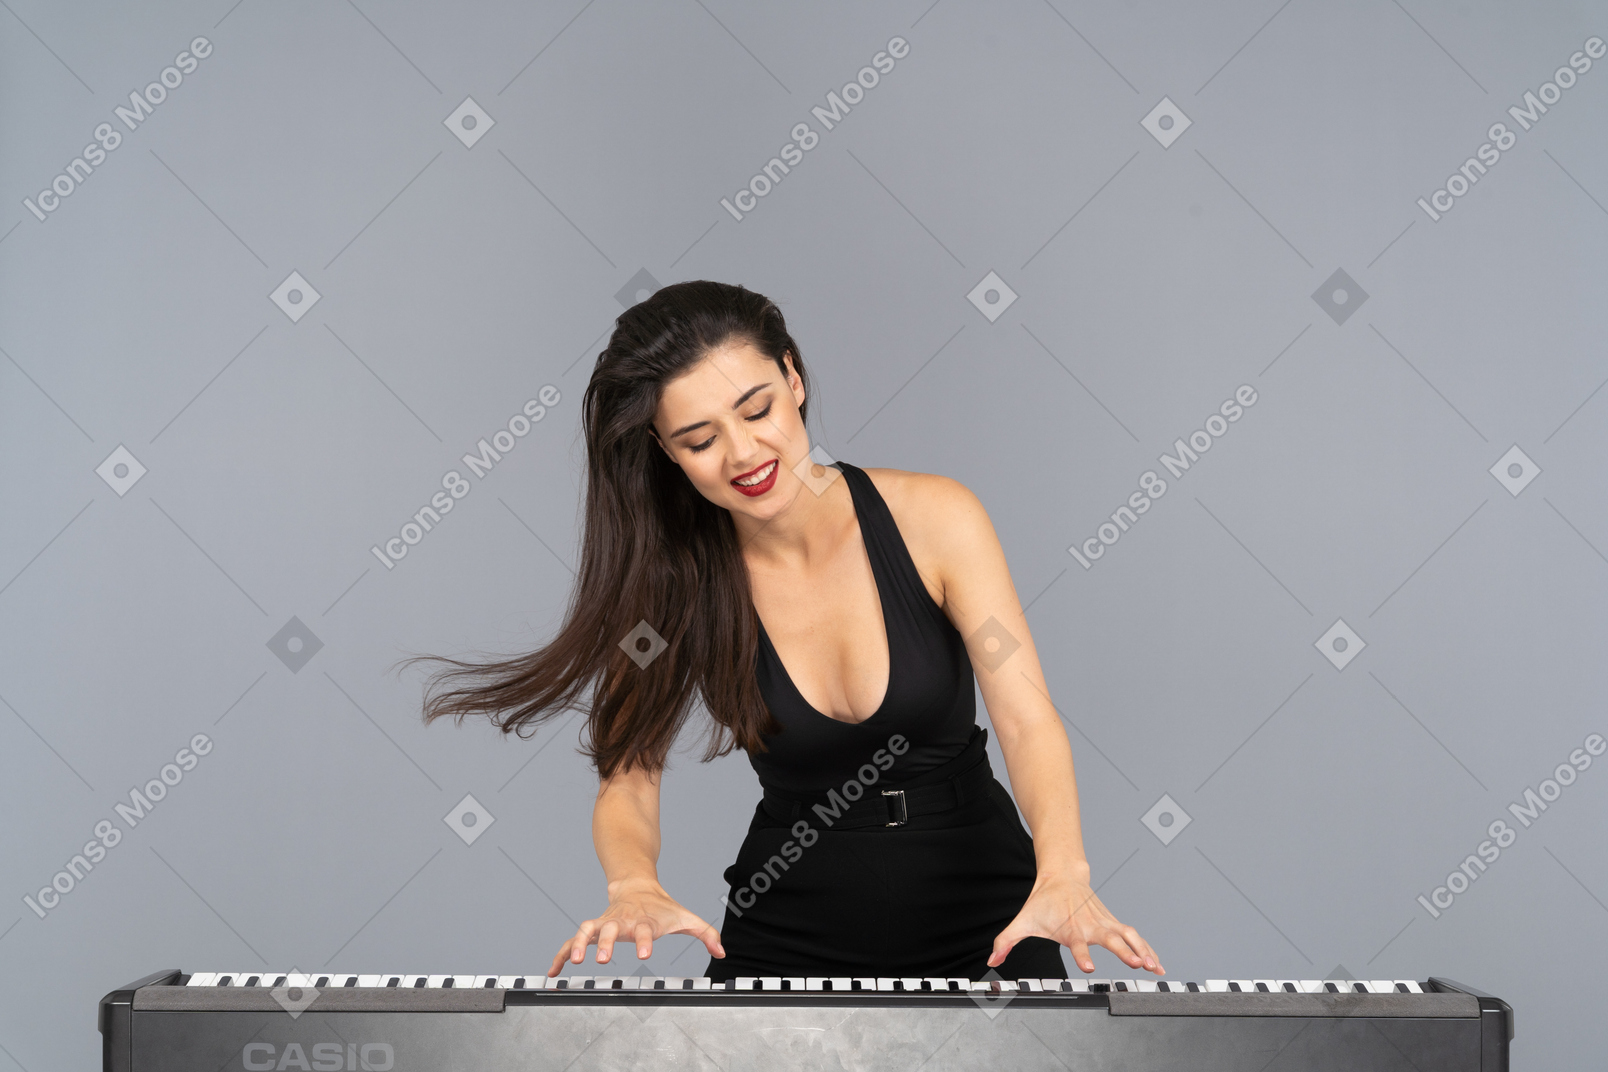 Vista frontal de una joven complacida vestida de negro tocando el piano mientras sonríe